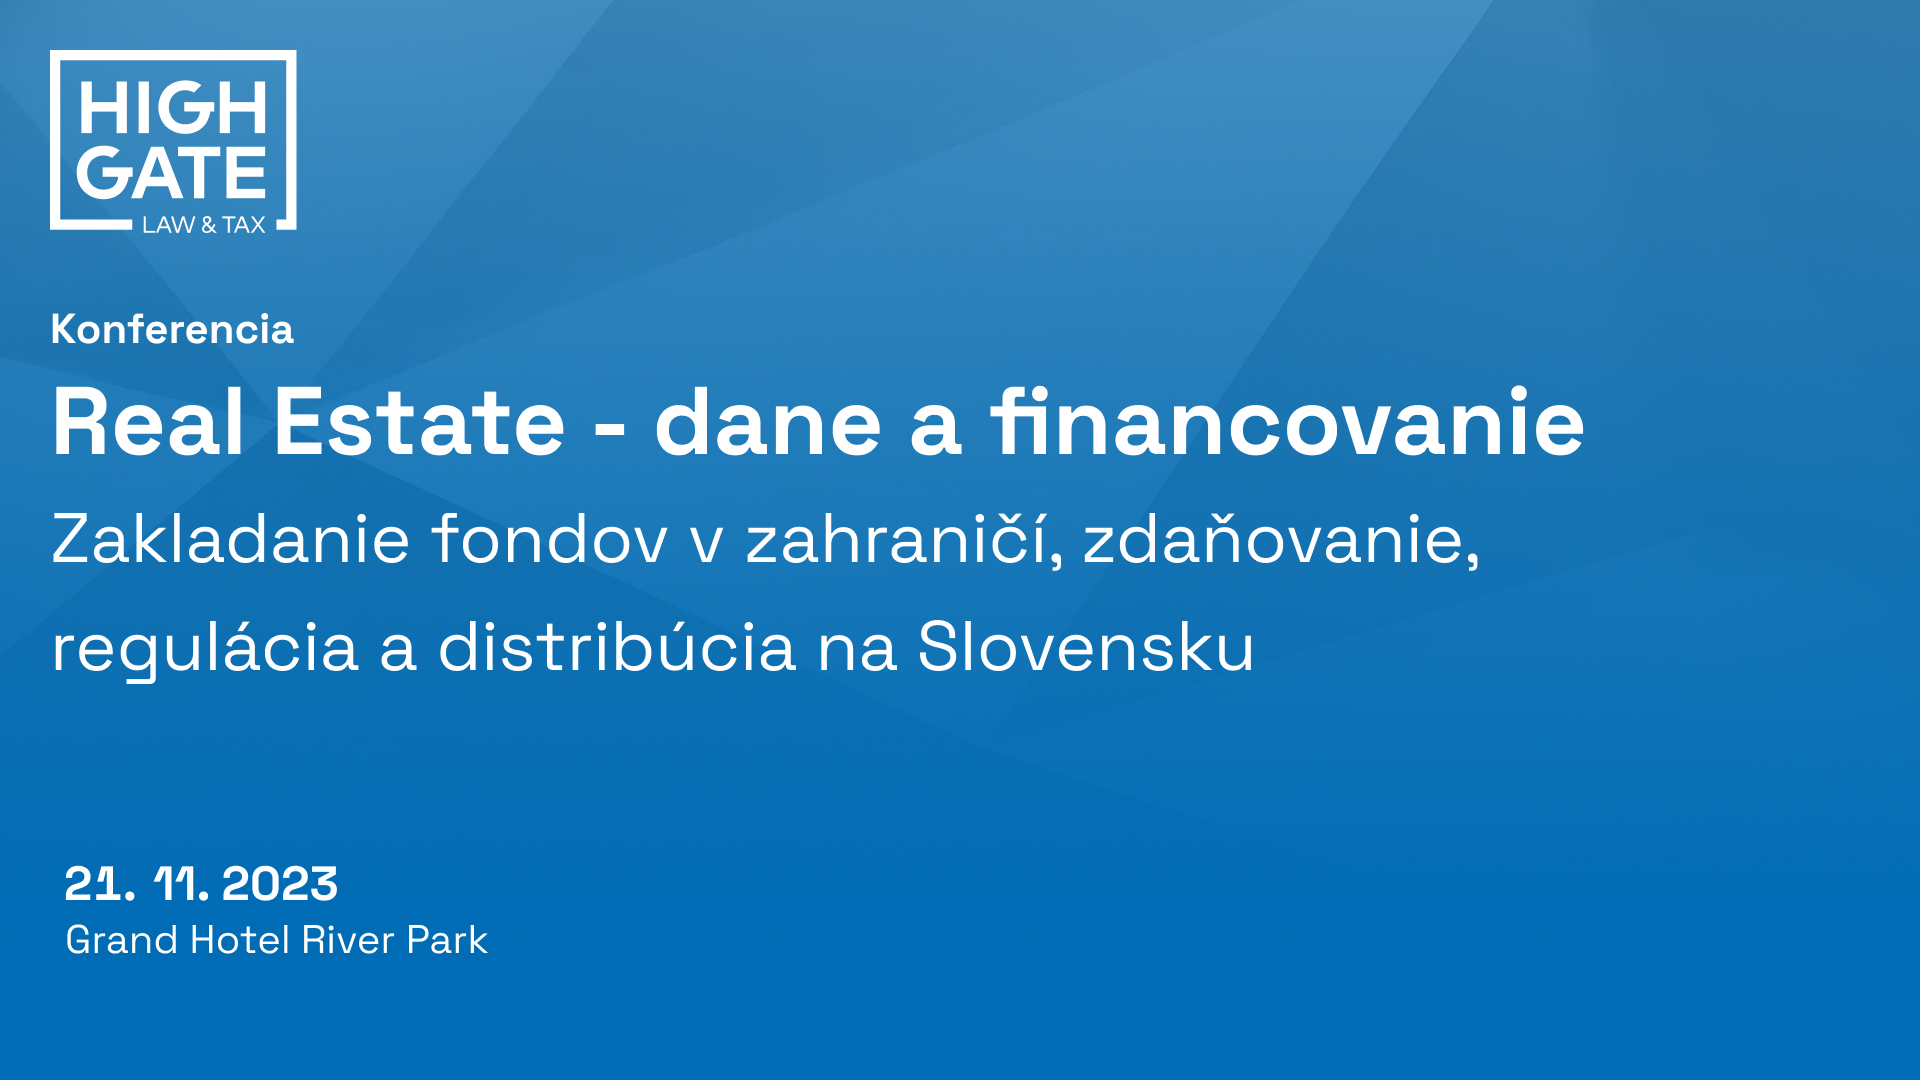 Videozáznam z konferencie Real Estate - dane a financovanie. Panel: Zakladanie fondov v zahraničí, zdaňovanie, regulácia a distribúcia na Slovensku